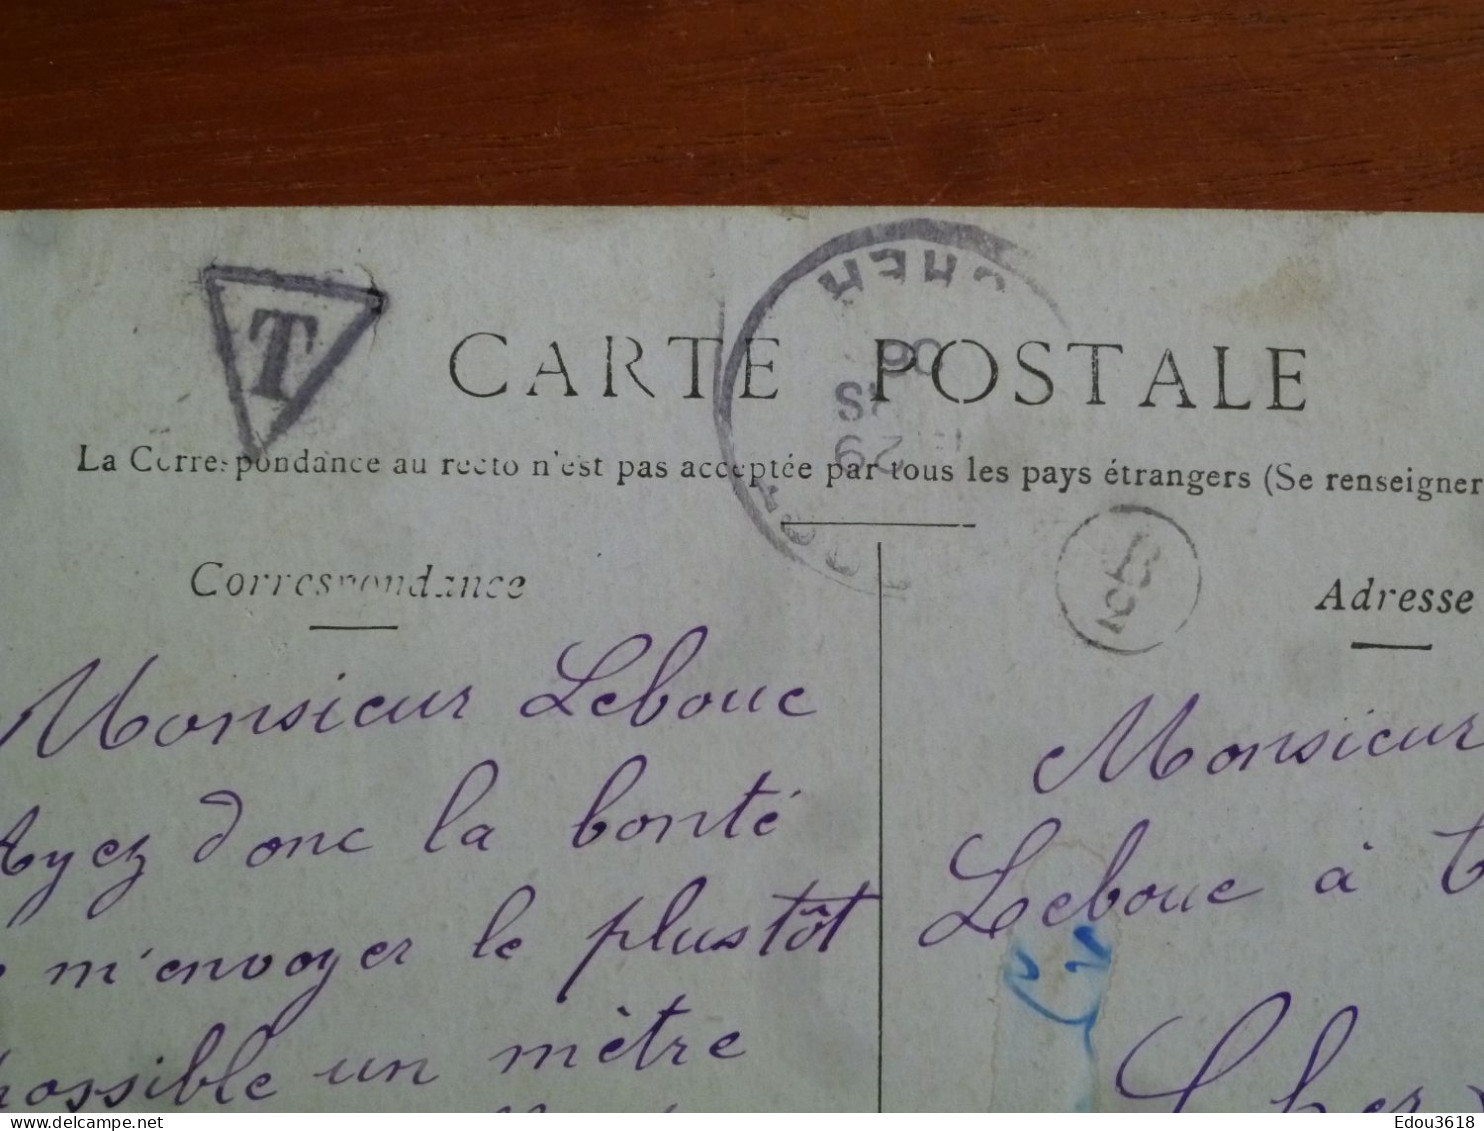 Carte Postale Rome Le Forum Staerck - Timbre Taxe - Lettre T Dans Triangle 1910 - Indicatif Circulaire Facteur 758 - Manual Postmarks